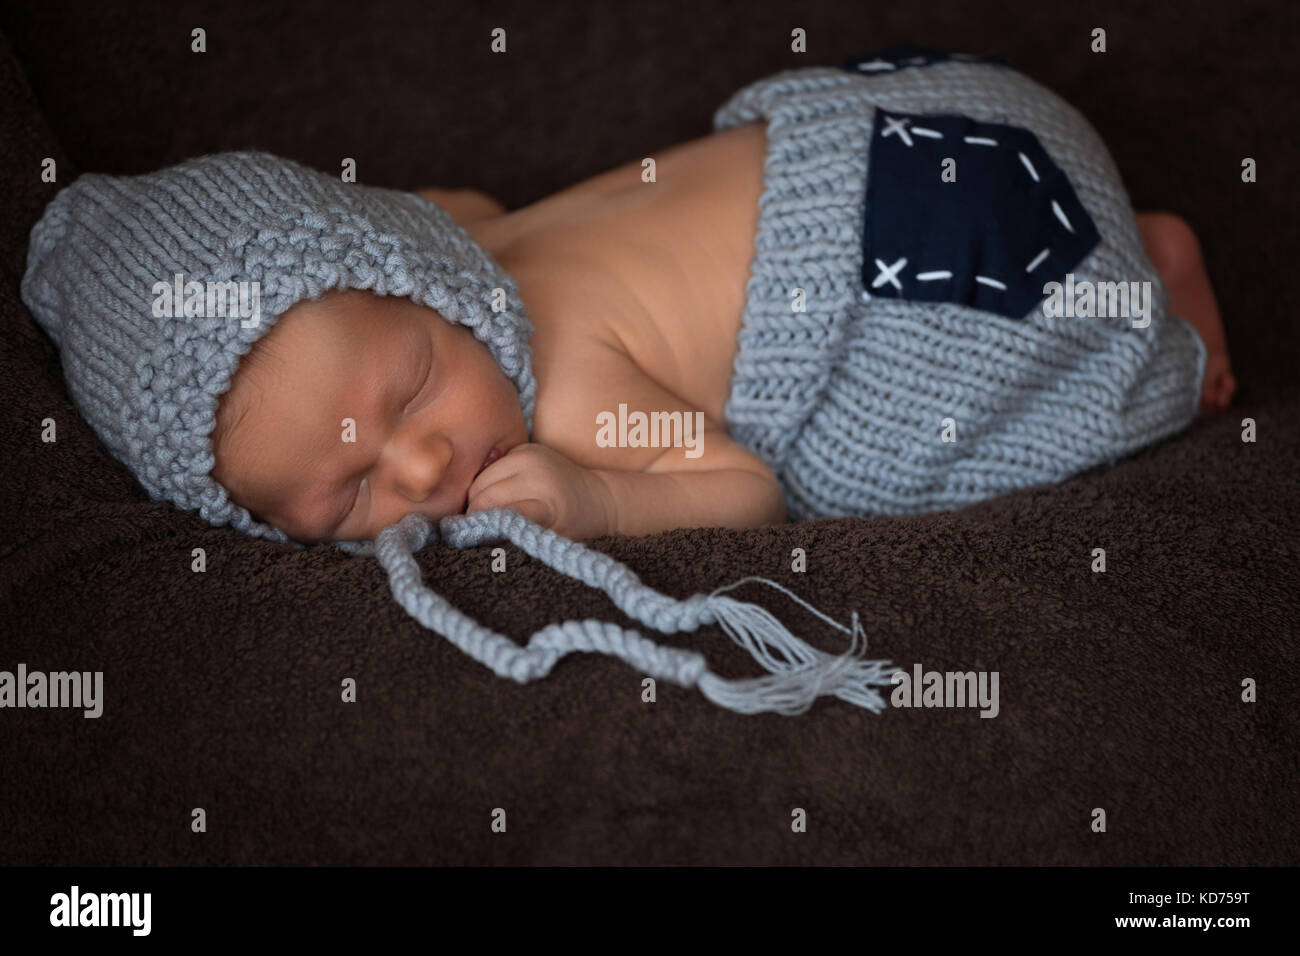 Bébé nouveau-né dans un costume en tricot gris dort dans un beau poser Banque D'Images